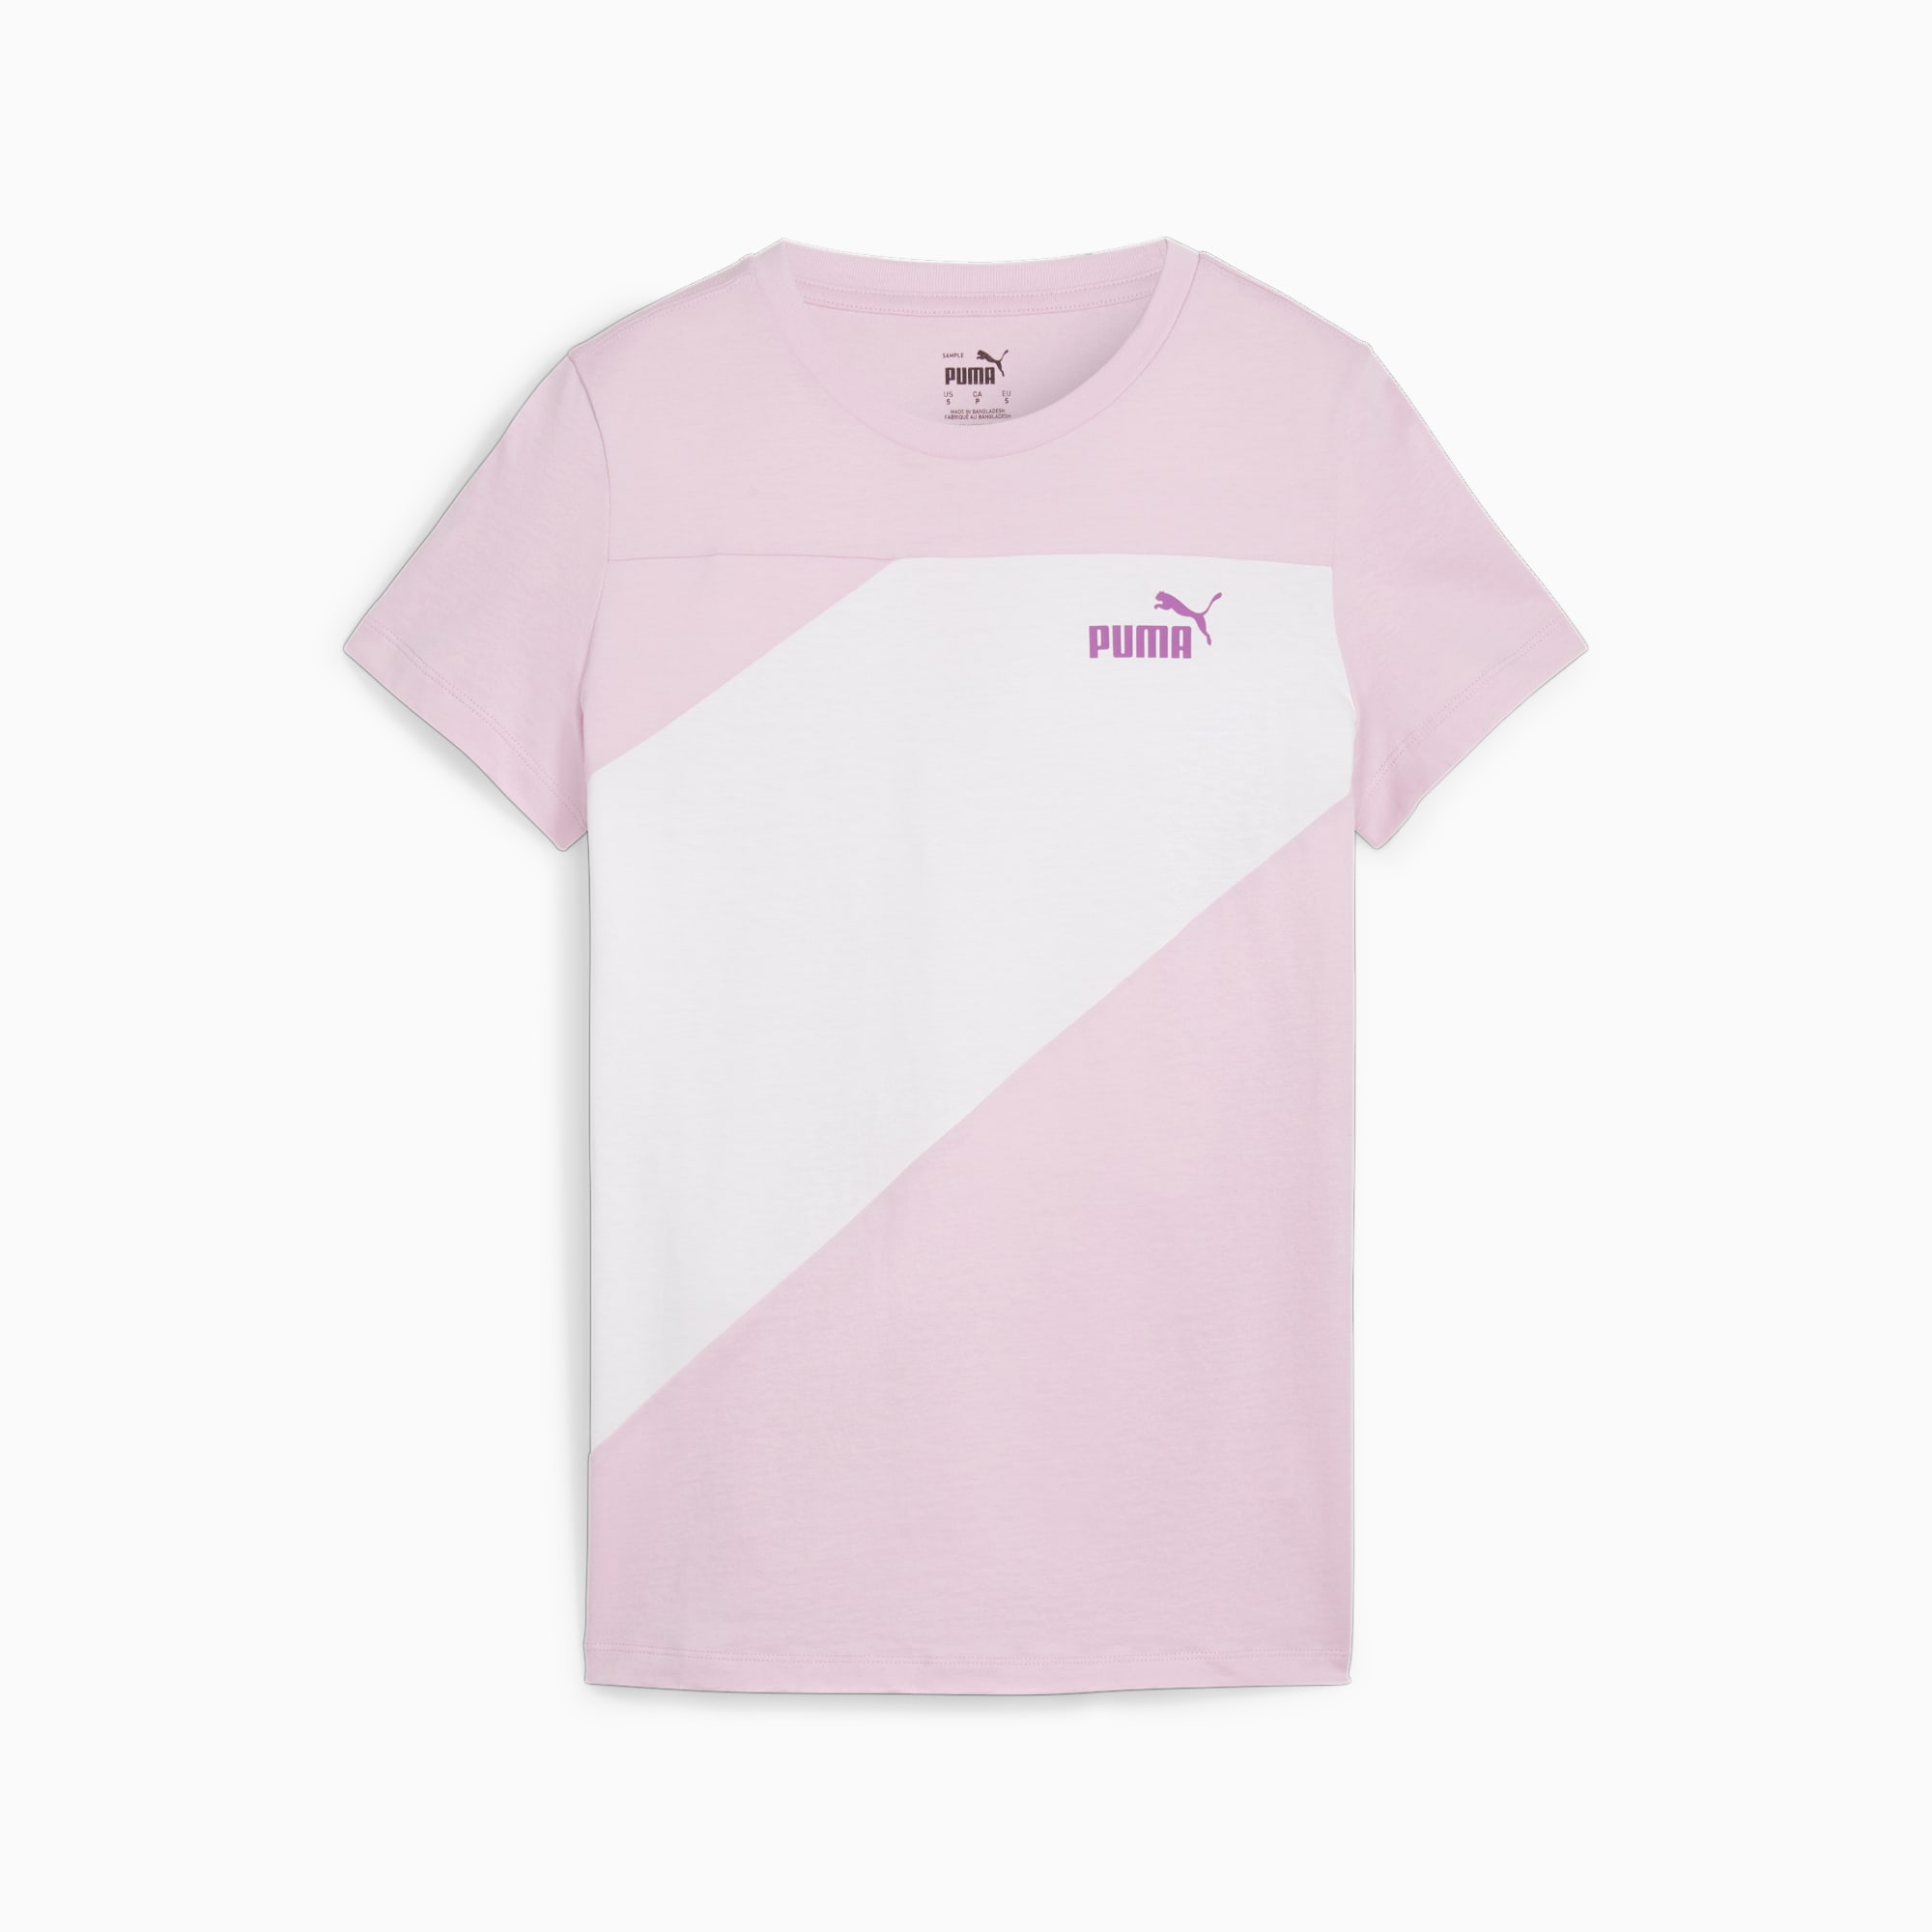 PUMA Power Women's T-Shirt, Grape Mist